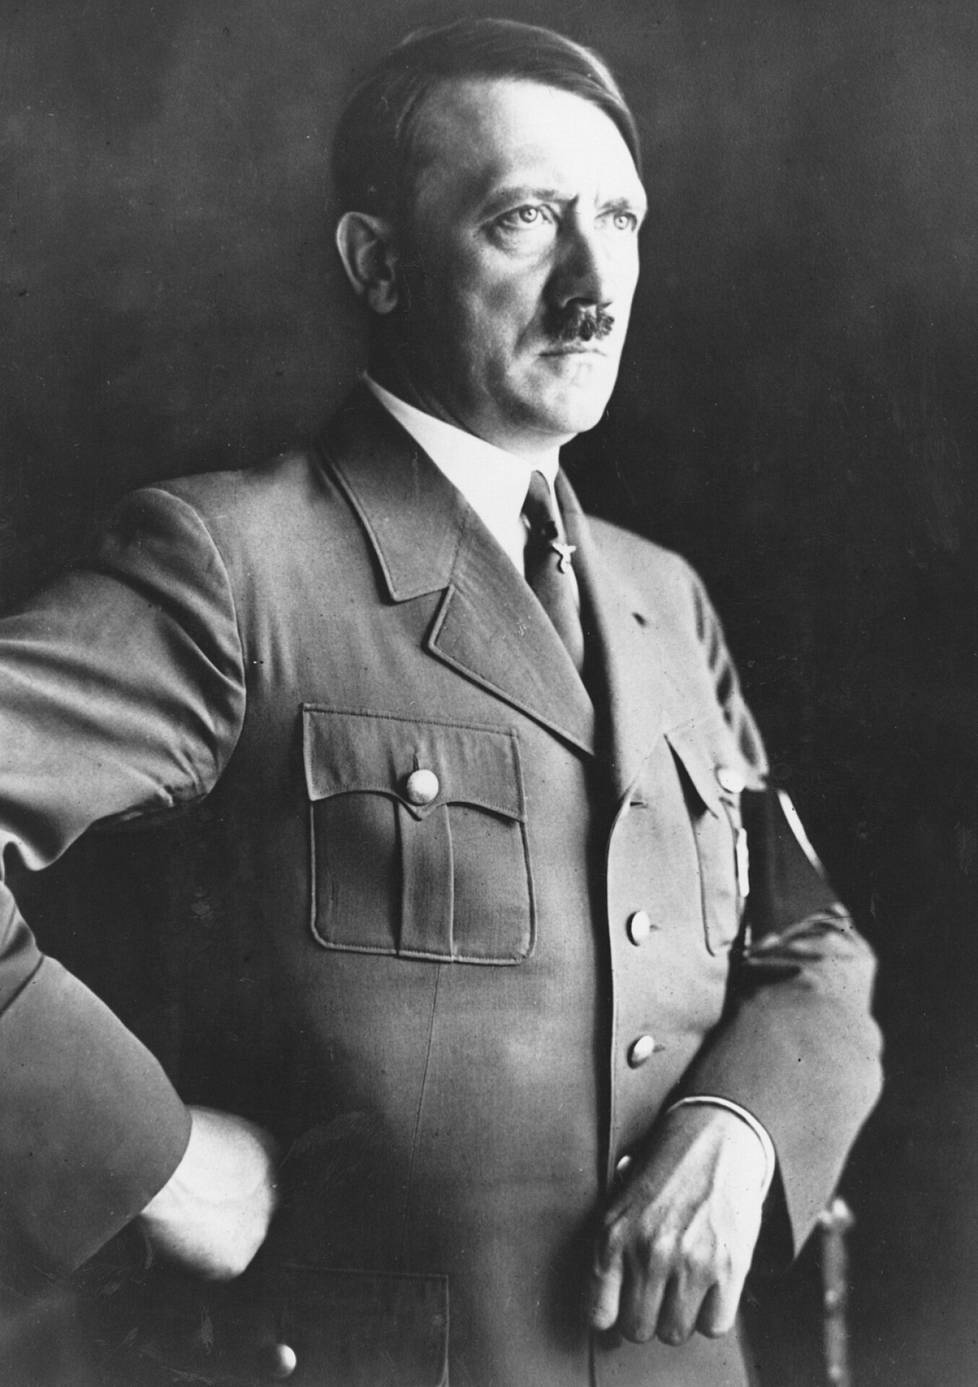 Adolf Hitlerin tekoälyversion kanssa keskustelu maksaa sovelluksessa noin 15 euroa.